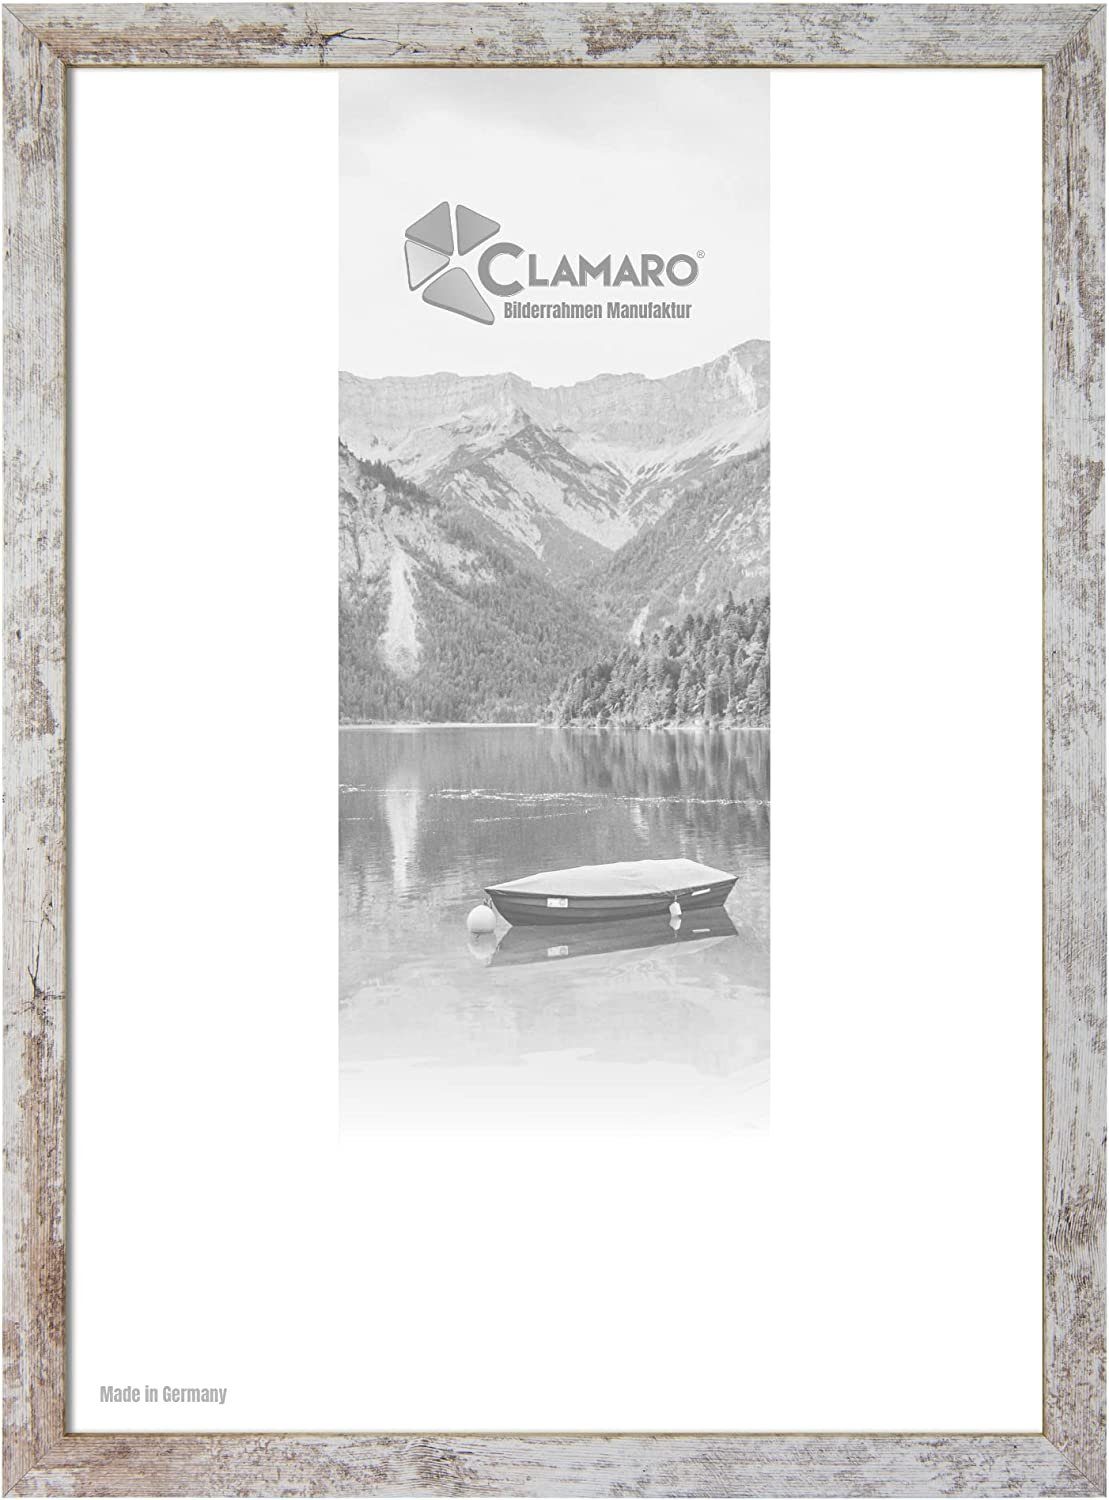 Clamaro Bilderrahmen Bilderrahmen Vintage Weiss CLAMARO Collage nach Maß FSC® Holz Modern eckig M3016 15x20 in Vintage Weiss